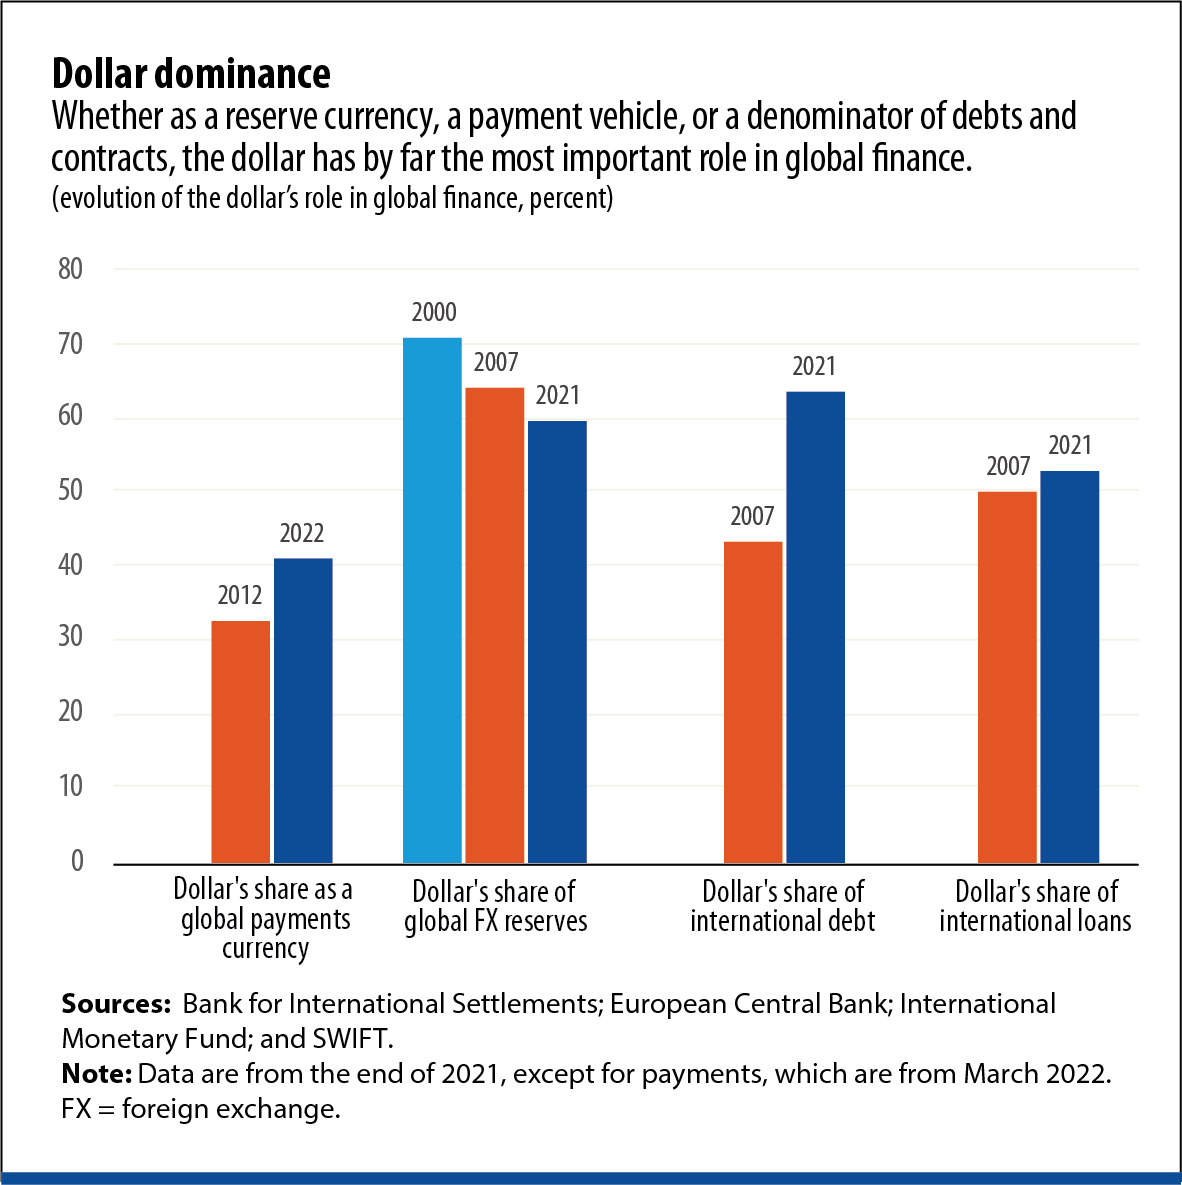 Dominio del dólar Ya sea como moneda de reserva, vehículo de pago o denominador de deudas y contratos, el dólar tiene, con diferencia, el papel más importante en las finanzas mundiales.  (evolución del papel del dólar en las nanzas globales, porcentaje)